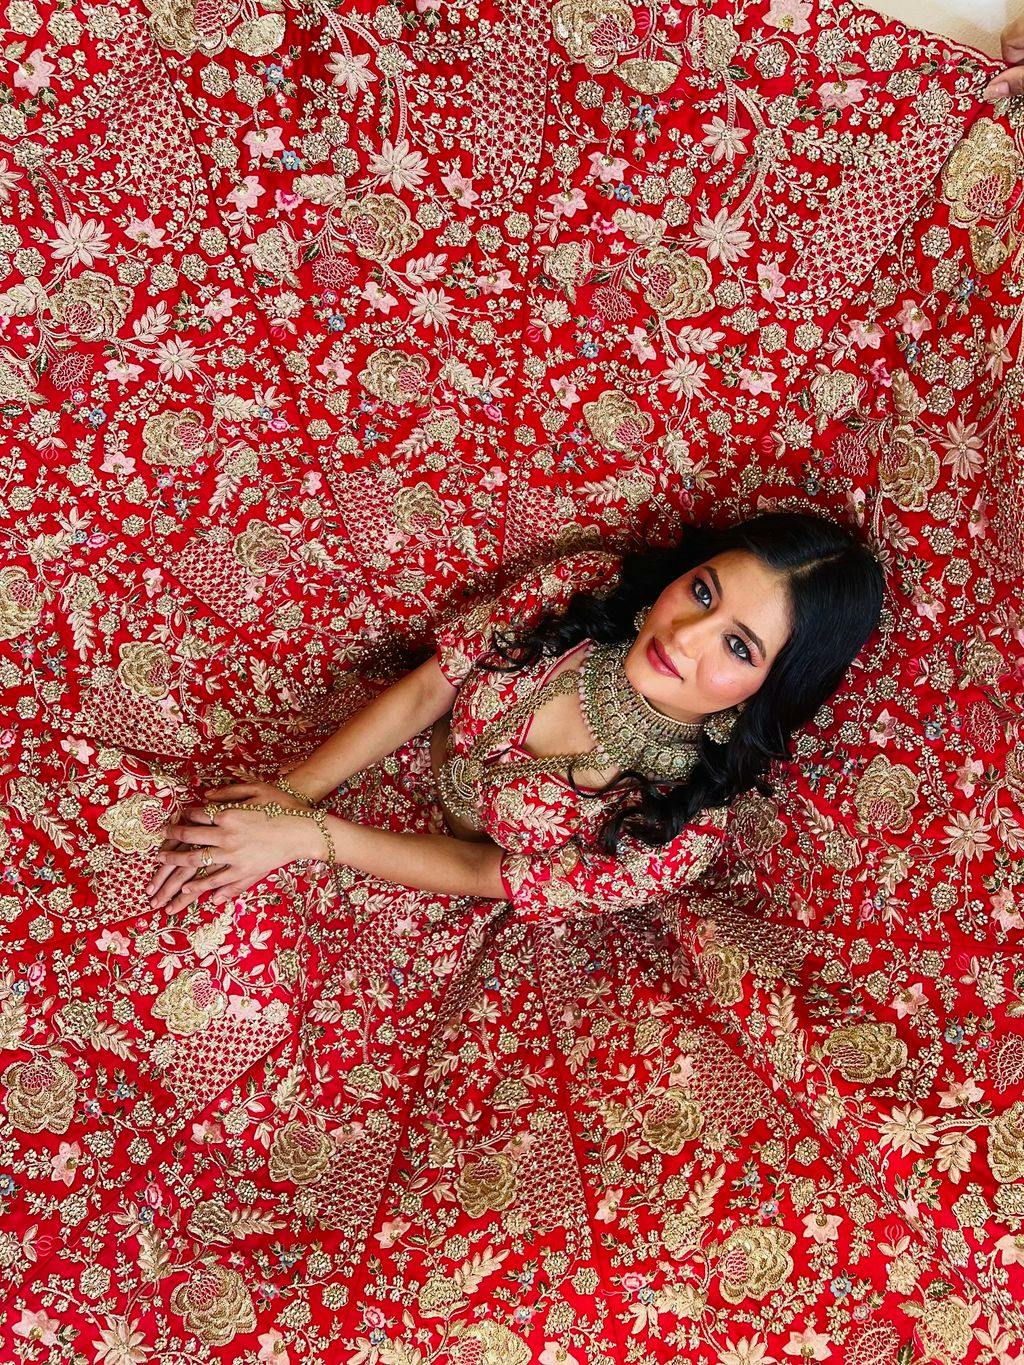 Saurabee Keshi's blurred background